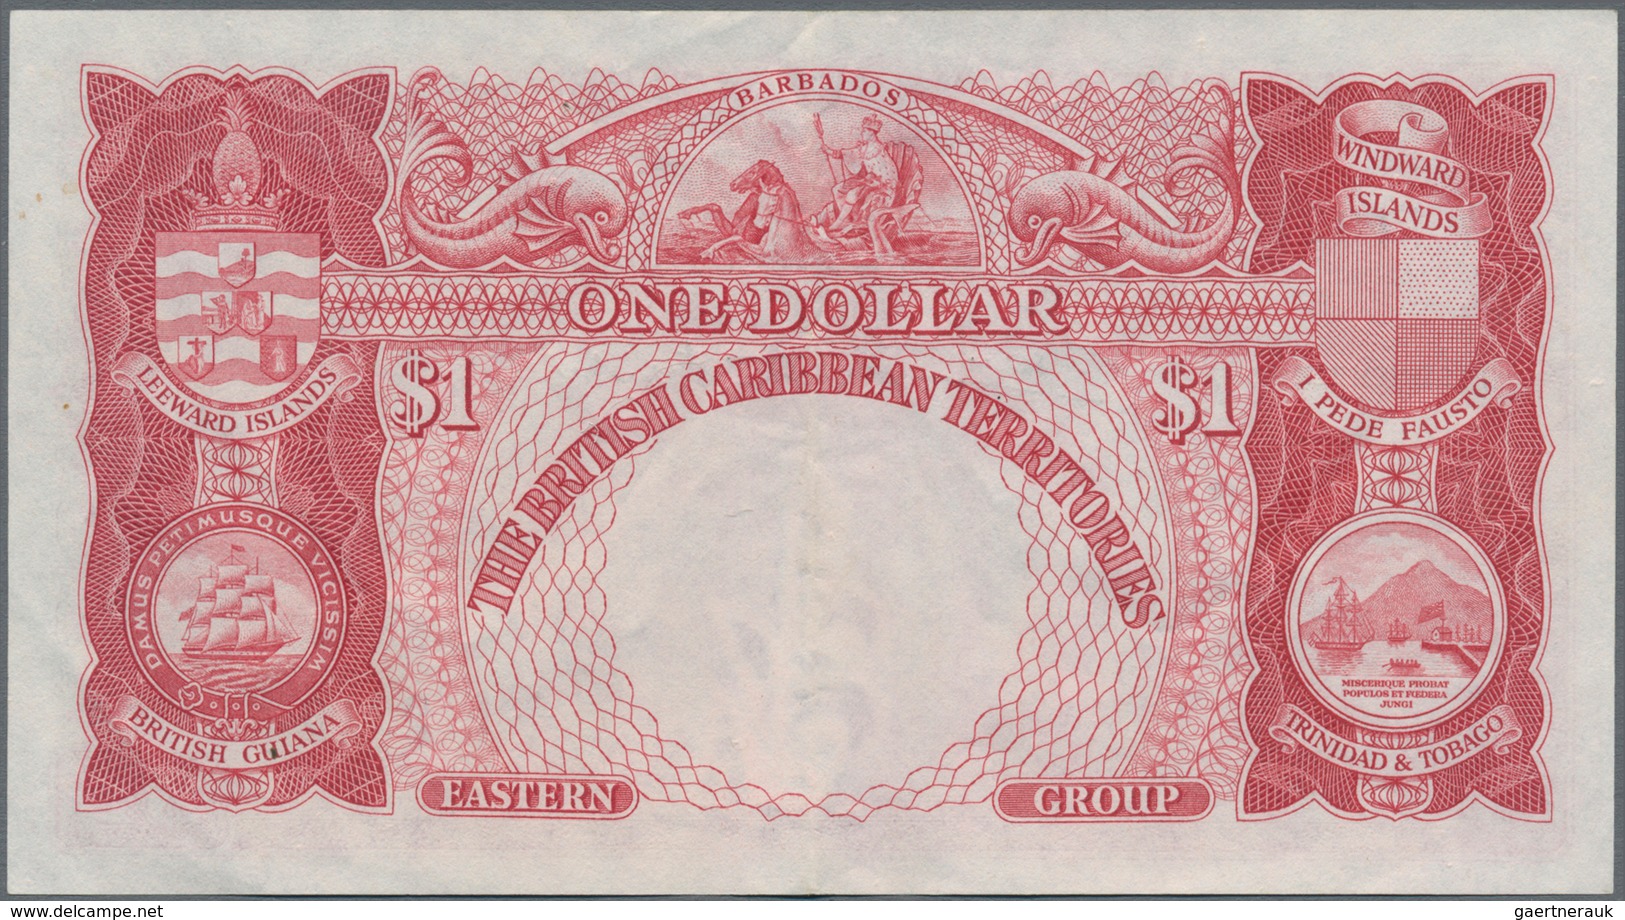 British Caribbean Territories: The British Caribbean Territories 1 Dollar September 1st 1951, P.1, S - Autres - Amérique